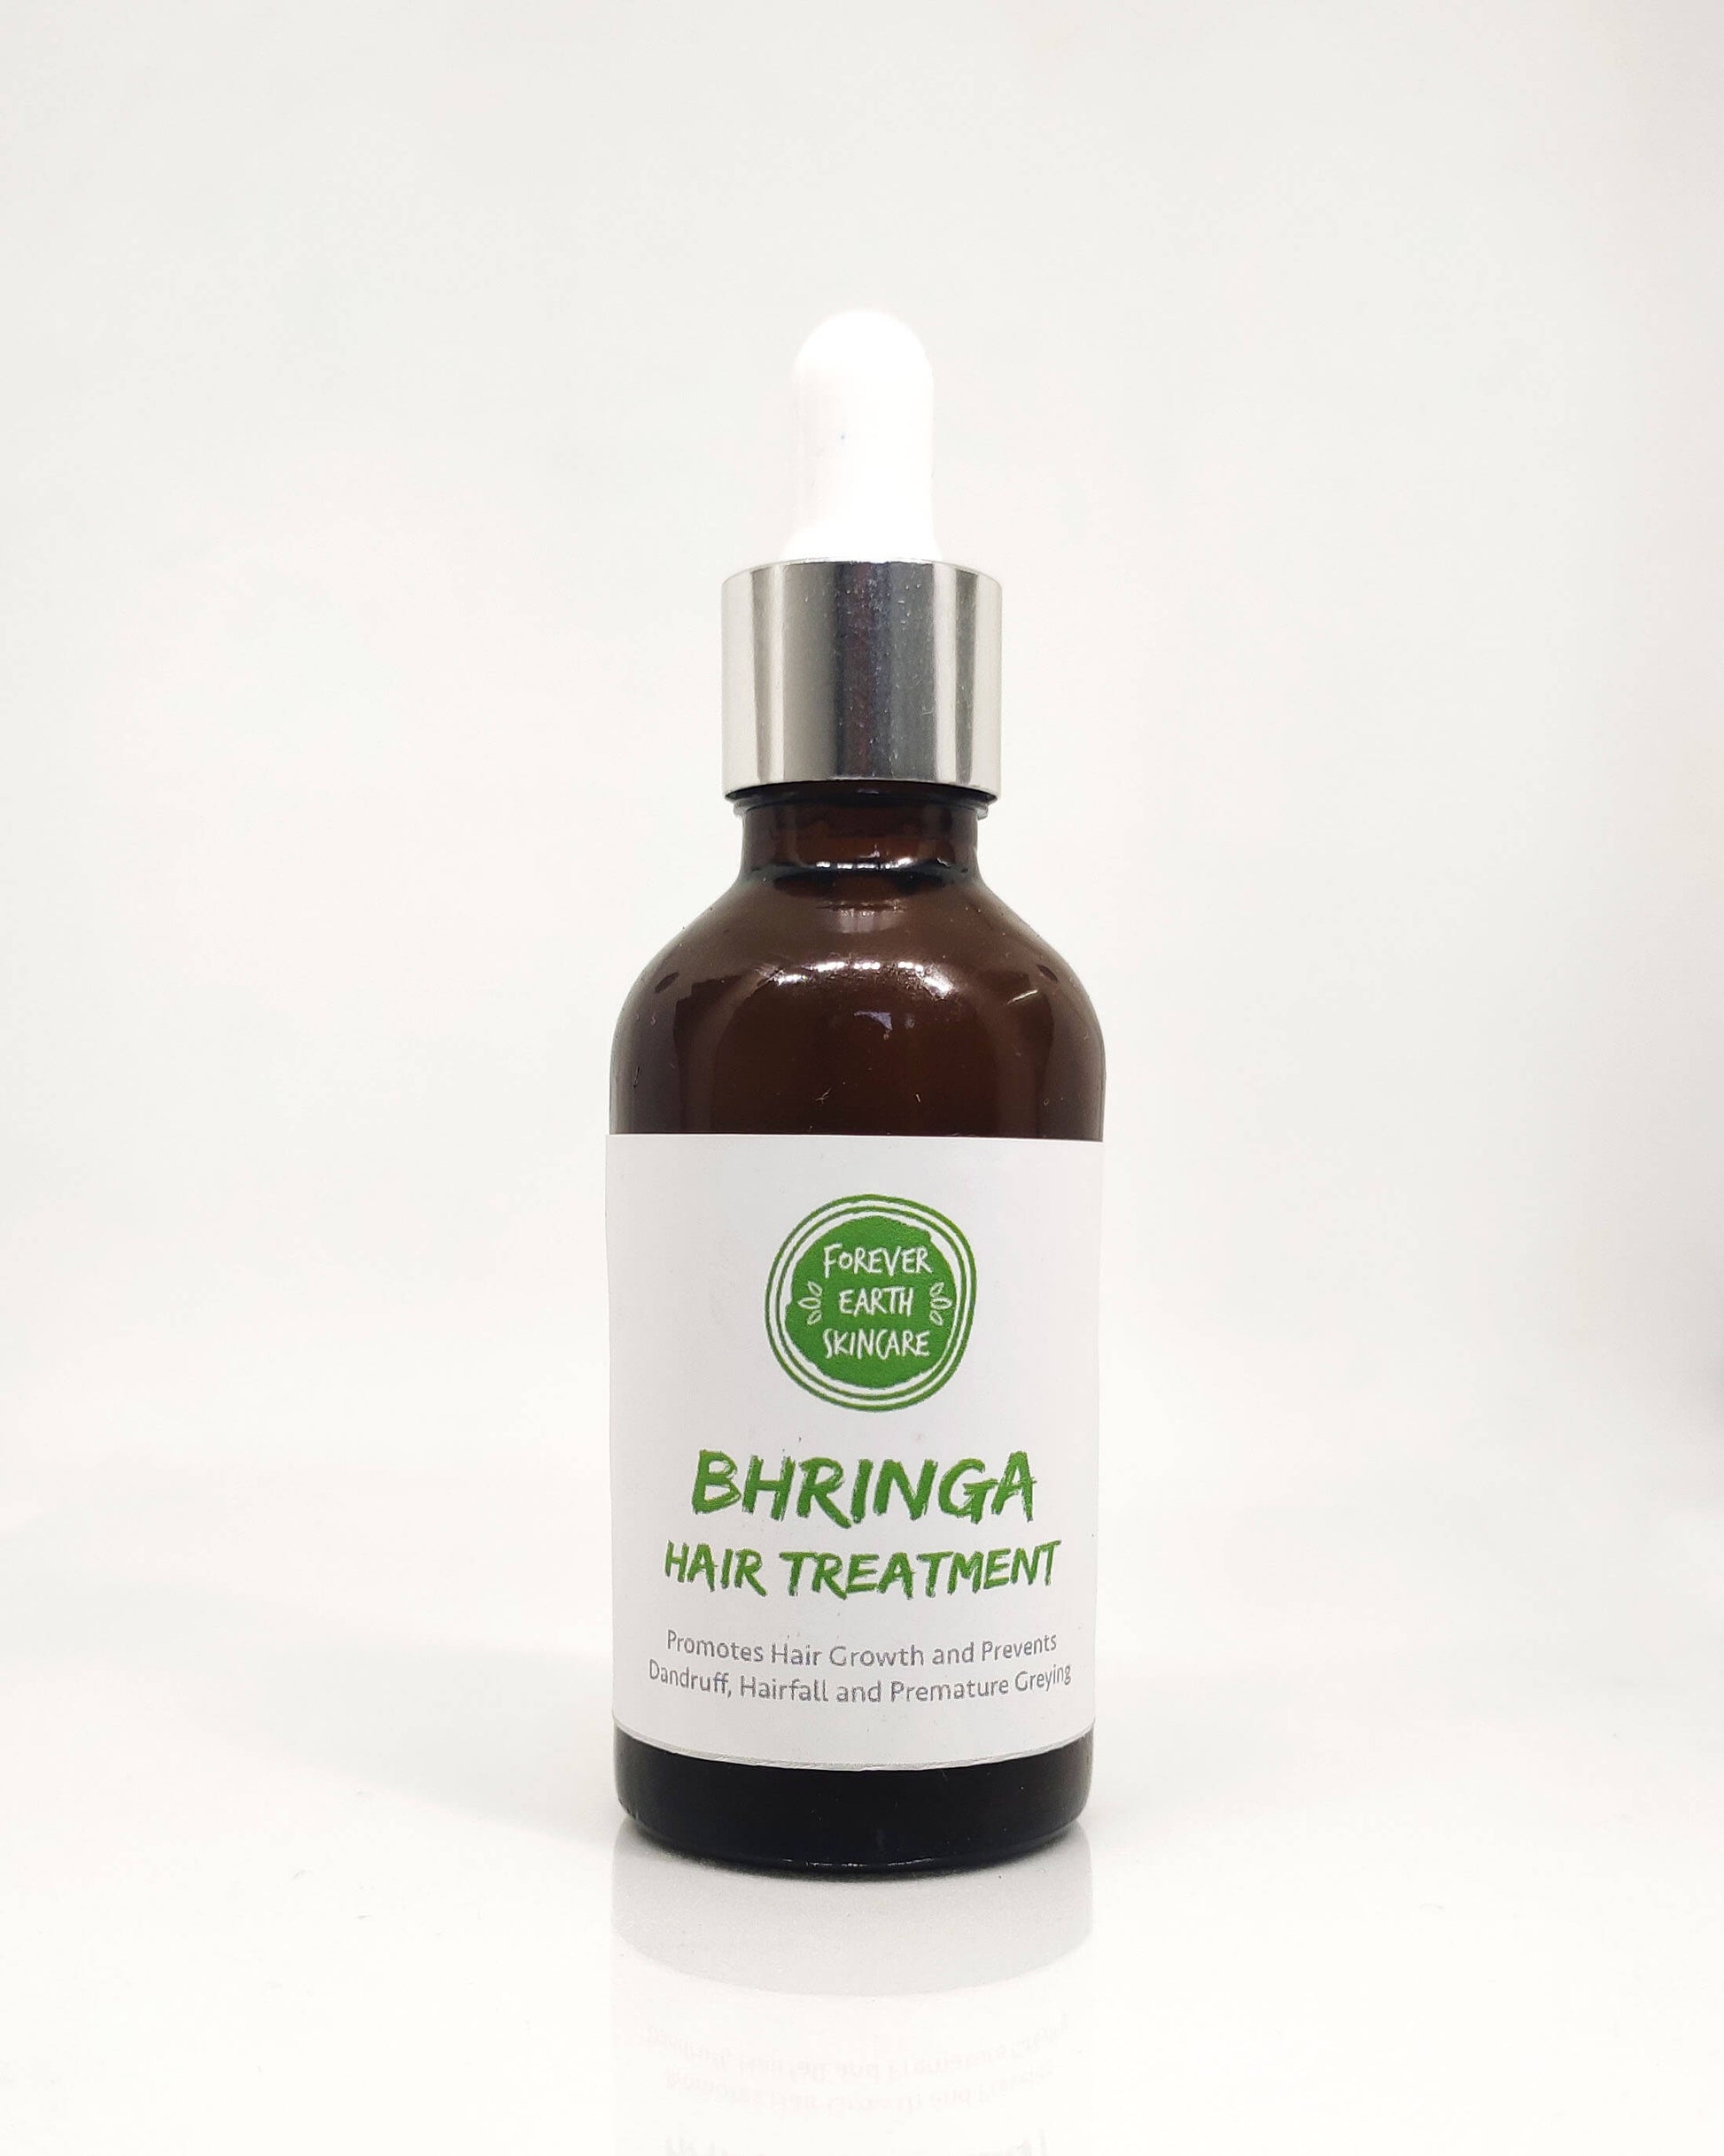 Bhringa Hair Treatment